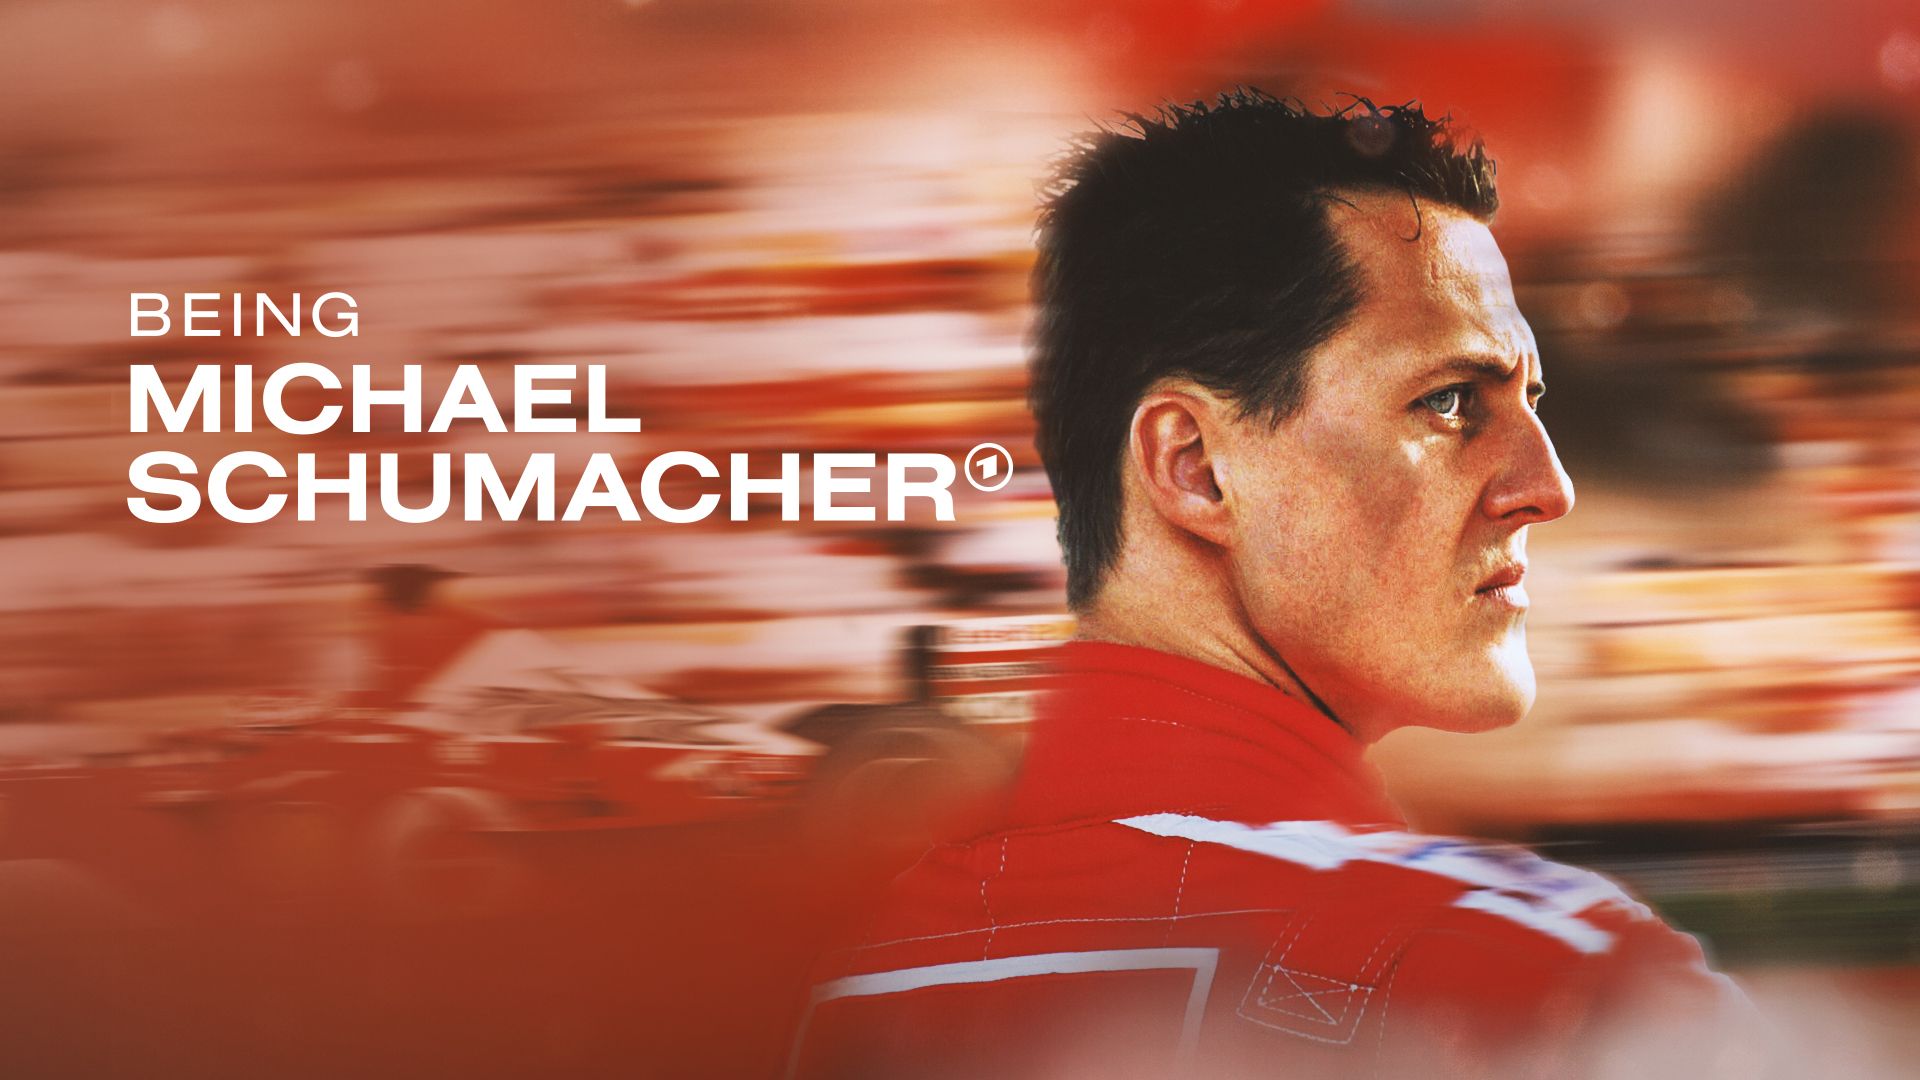  Michael Schumacher Hintergrundbild 1920x1080. Erfolgreicher Start für Being Michael Schumacher in der ARD Mediathek. Podcast